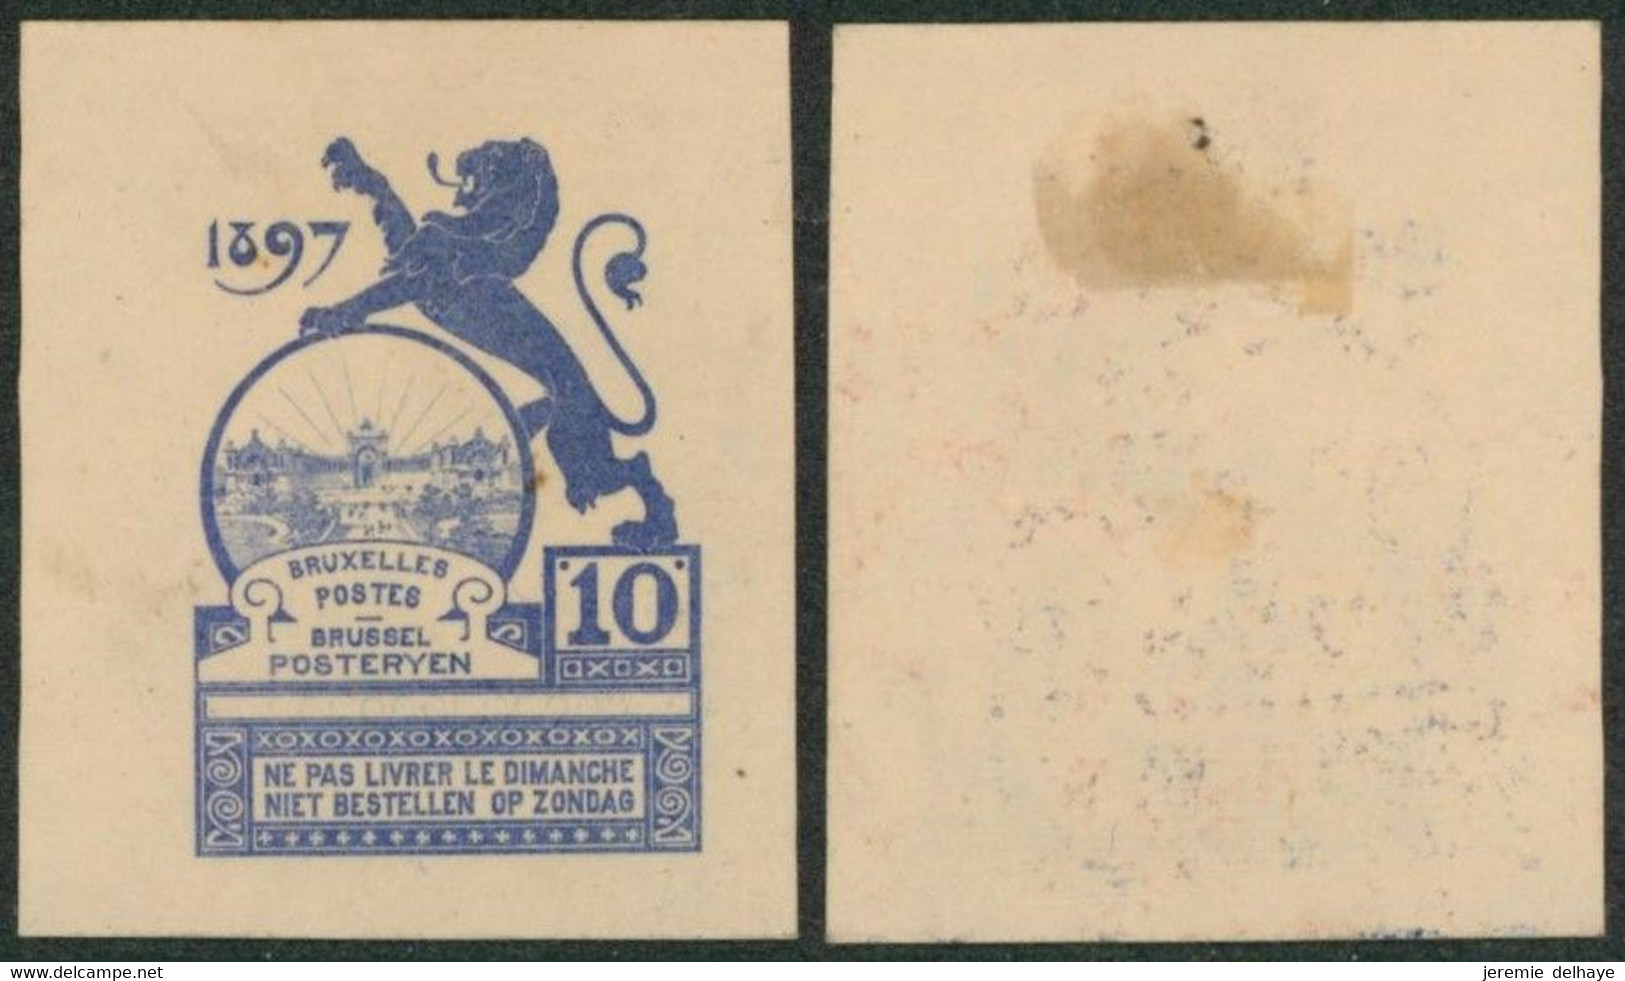 Essai - Proposition Du Peintre Louis Titz (Bruxelles Expositions 1897) Sur Papier Japon épais (1 Couleur) : STES 2223 - Probe- Und Nachdrucke